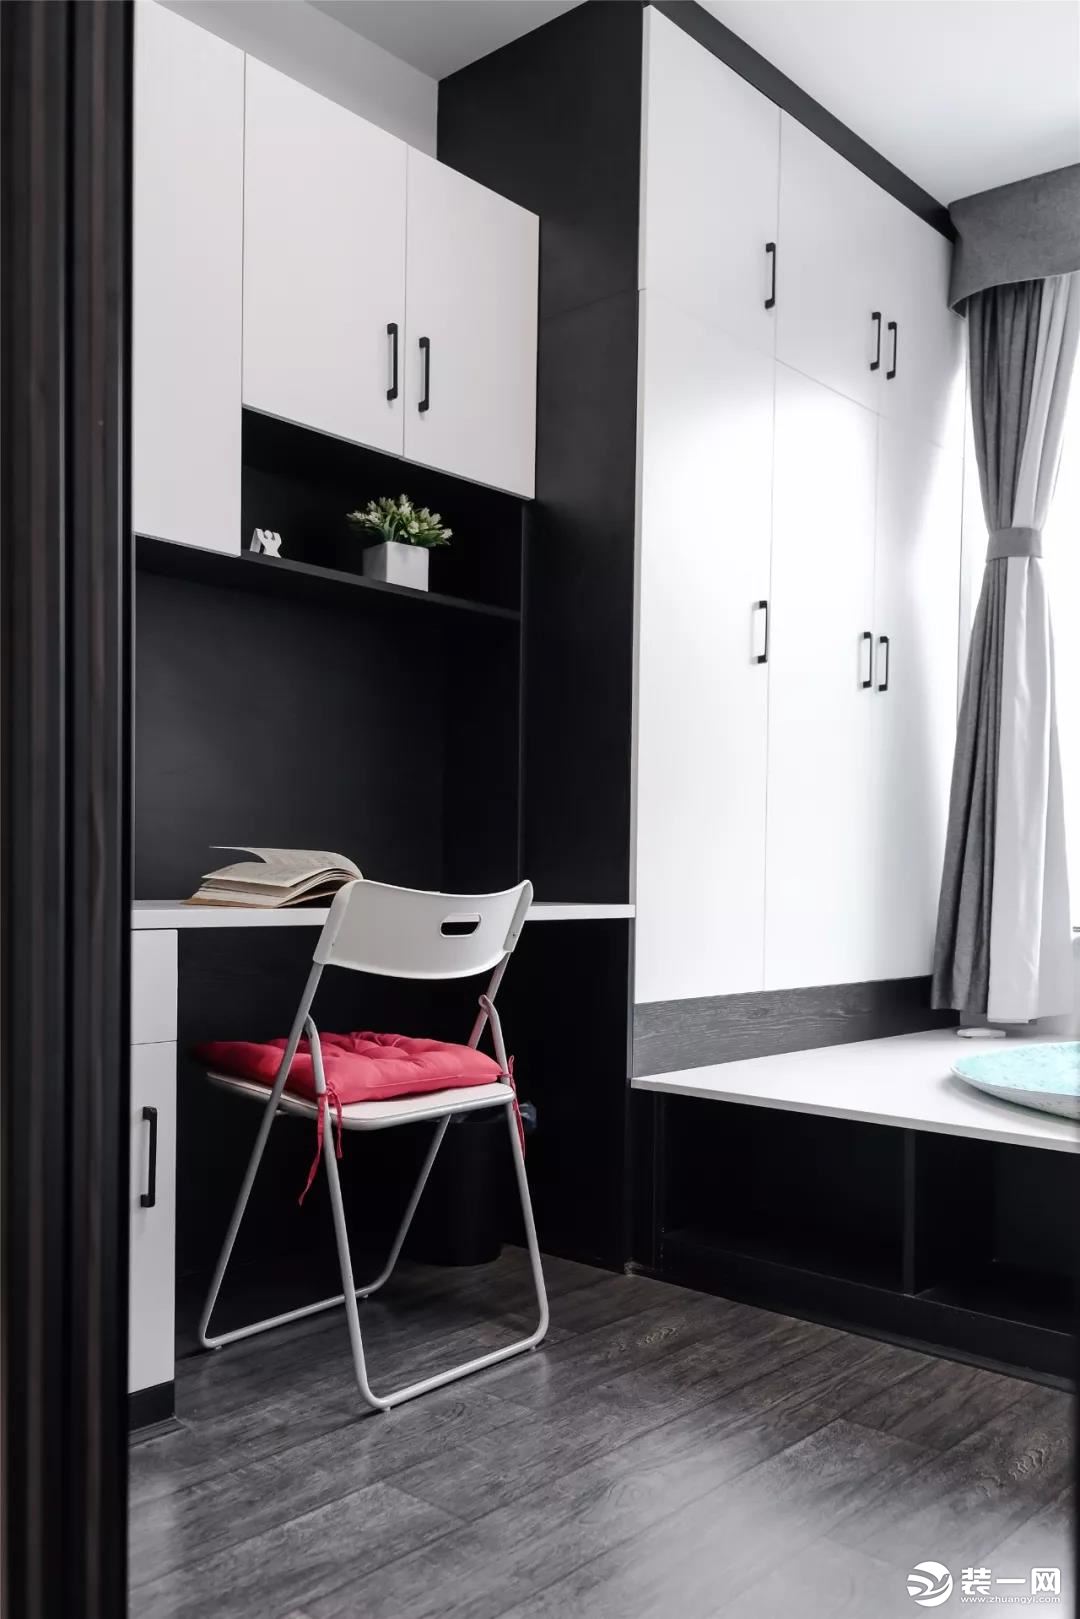 次卧深灰色的木地板,搭配黑白配的定制书桌,衣柜 榻榻米床,简洁优雅